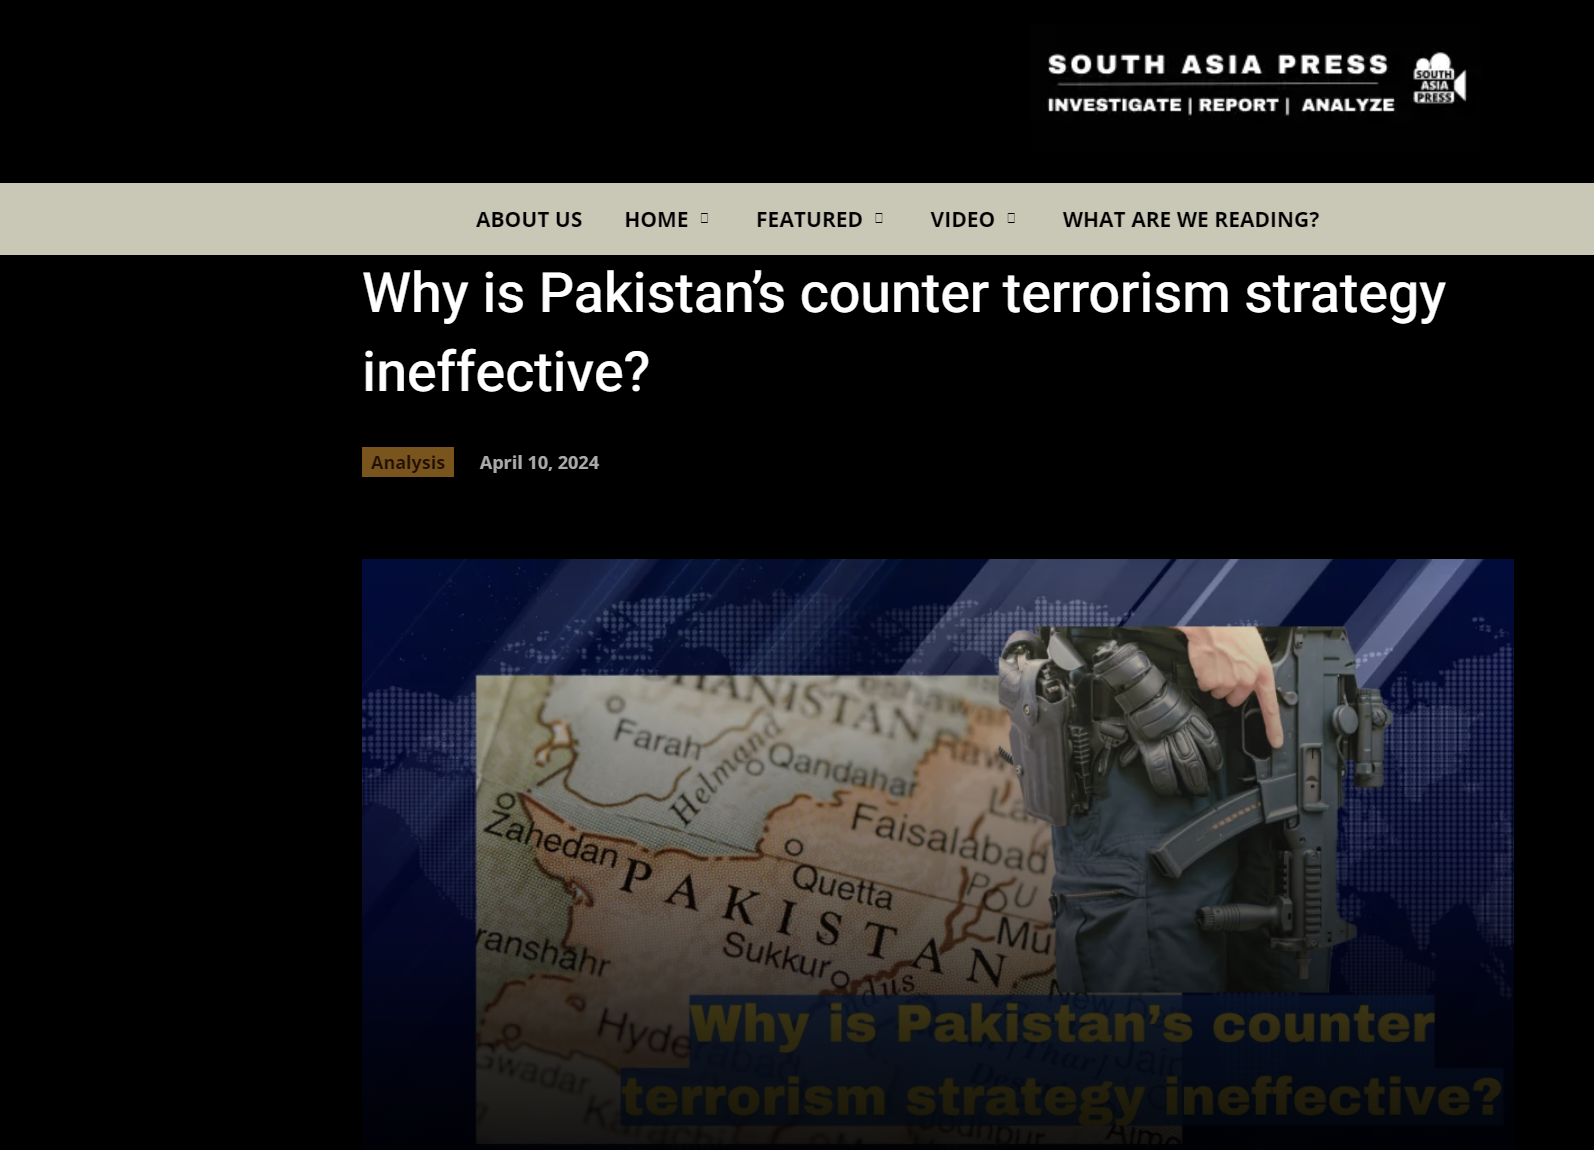 South Asia Press: Γιατί είναι αναποτελεσματική η αντιτρομοκρατική στρατηγική του Πακιστάν;